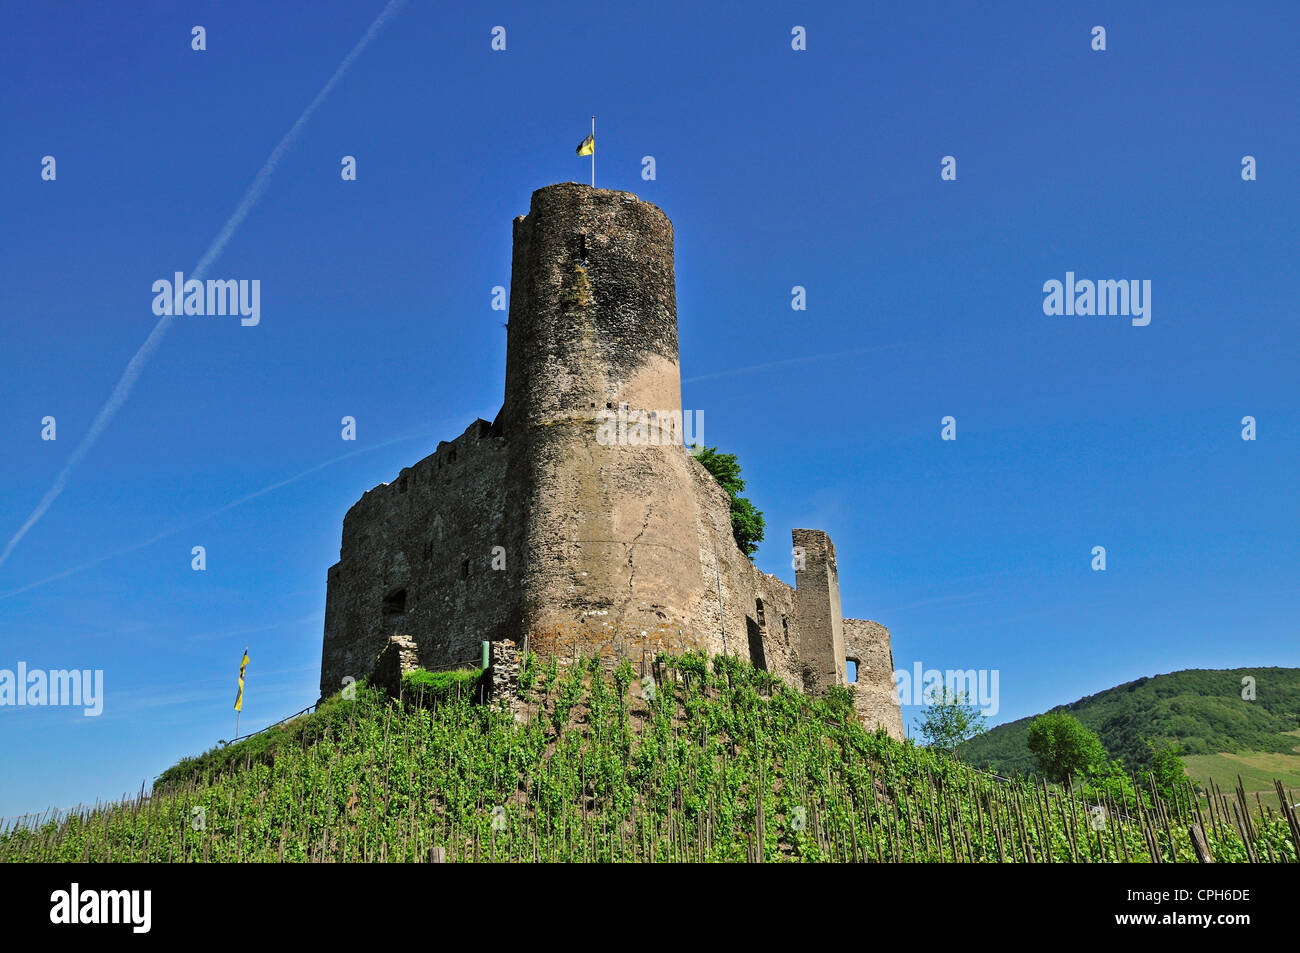 Bernkastel, castle, Germany, Europe, Kues, Landshut, Palatinate, Rhineland, wine, wine cultivation, wine-growing, Stock Photo